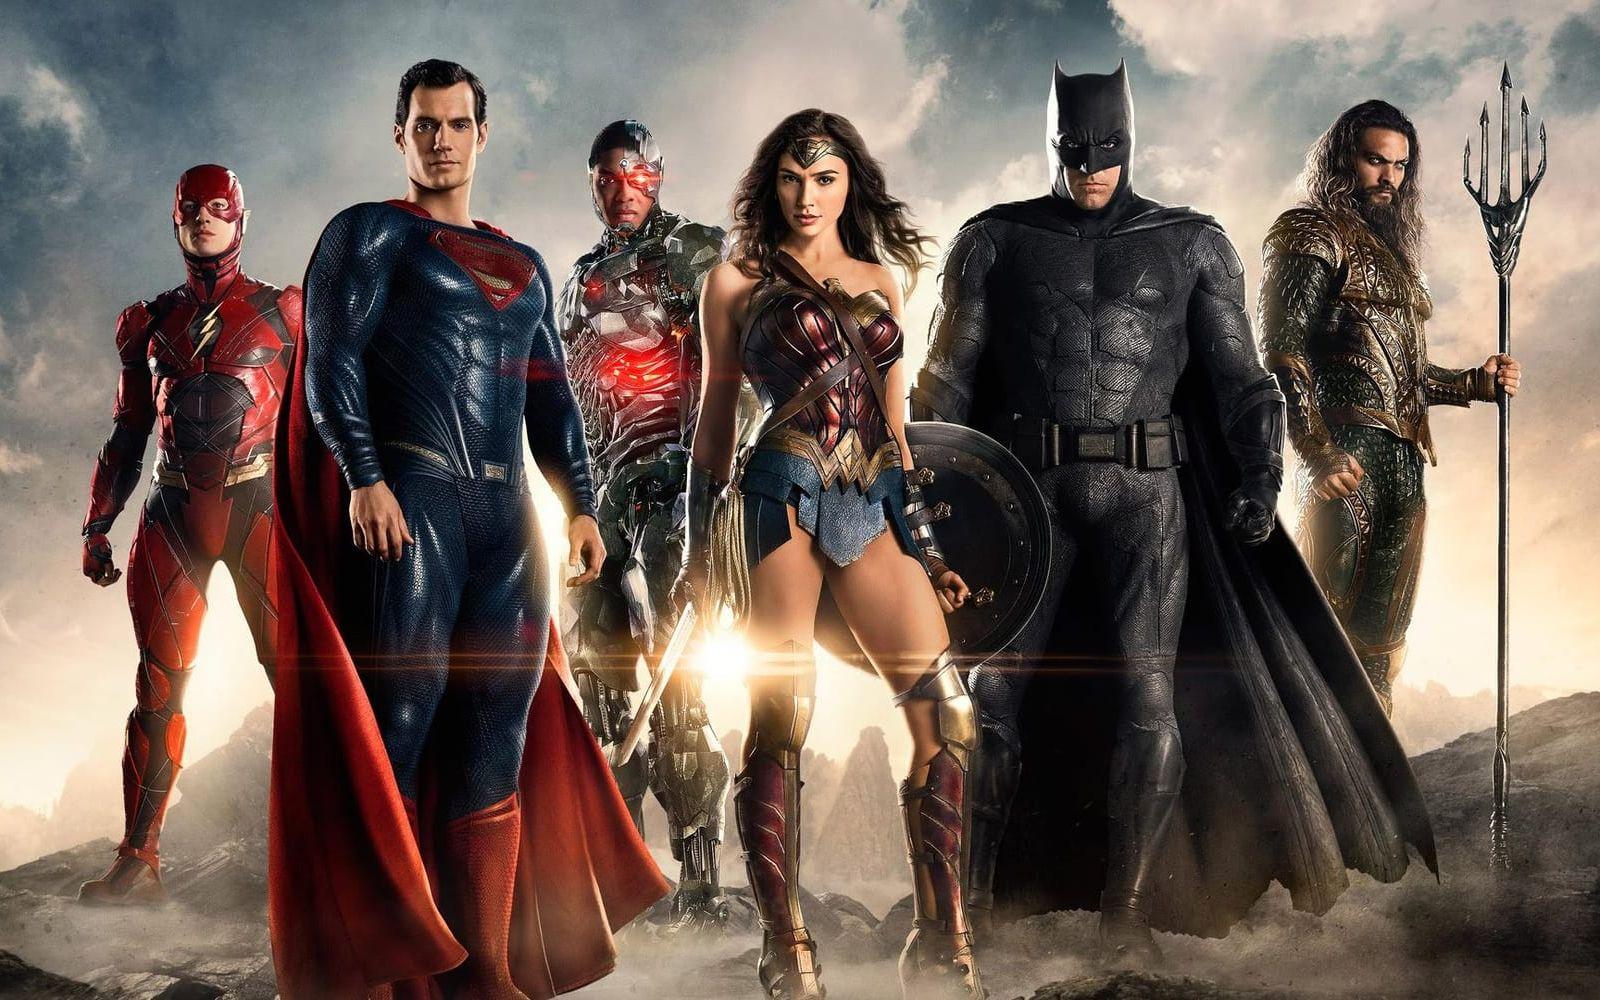 Det är mycket superhjältar nu för tiden. DC drog igång sitt universum med "Man of Steel" och har planer för horder av filmer de närmaste åren. Bland annat får vi se den första kvinnliga superhjälten på över tio år i "Wonder Woman" som har premiär i sommar.
